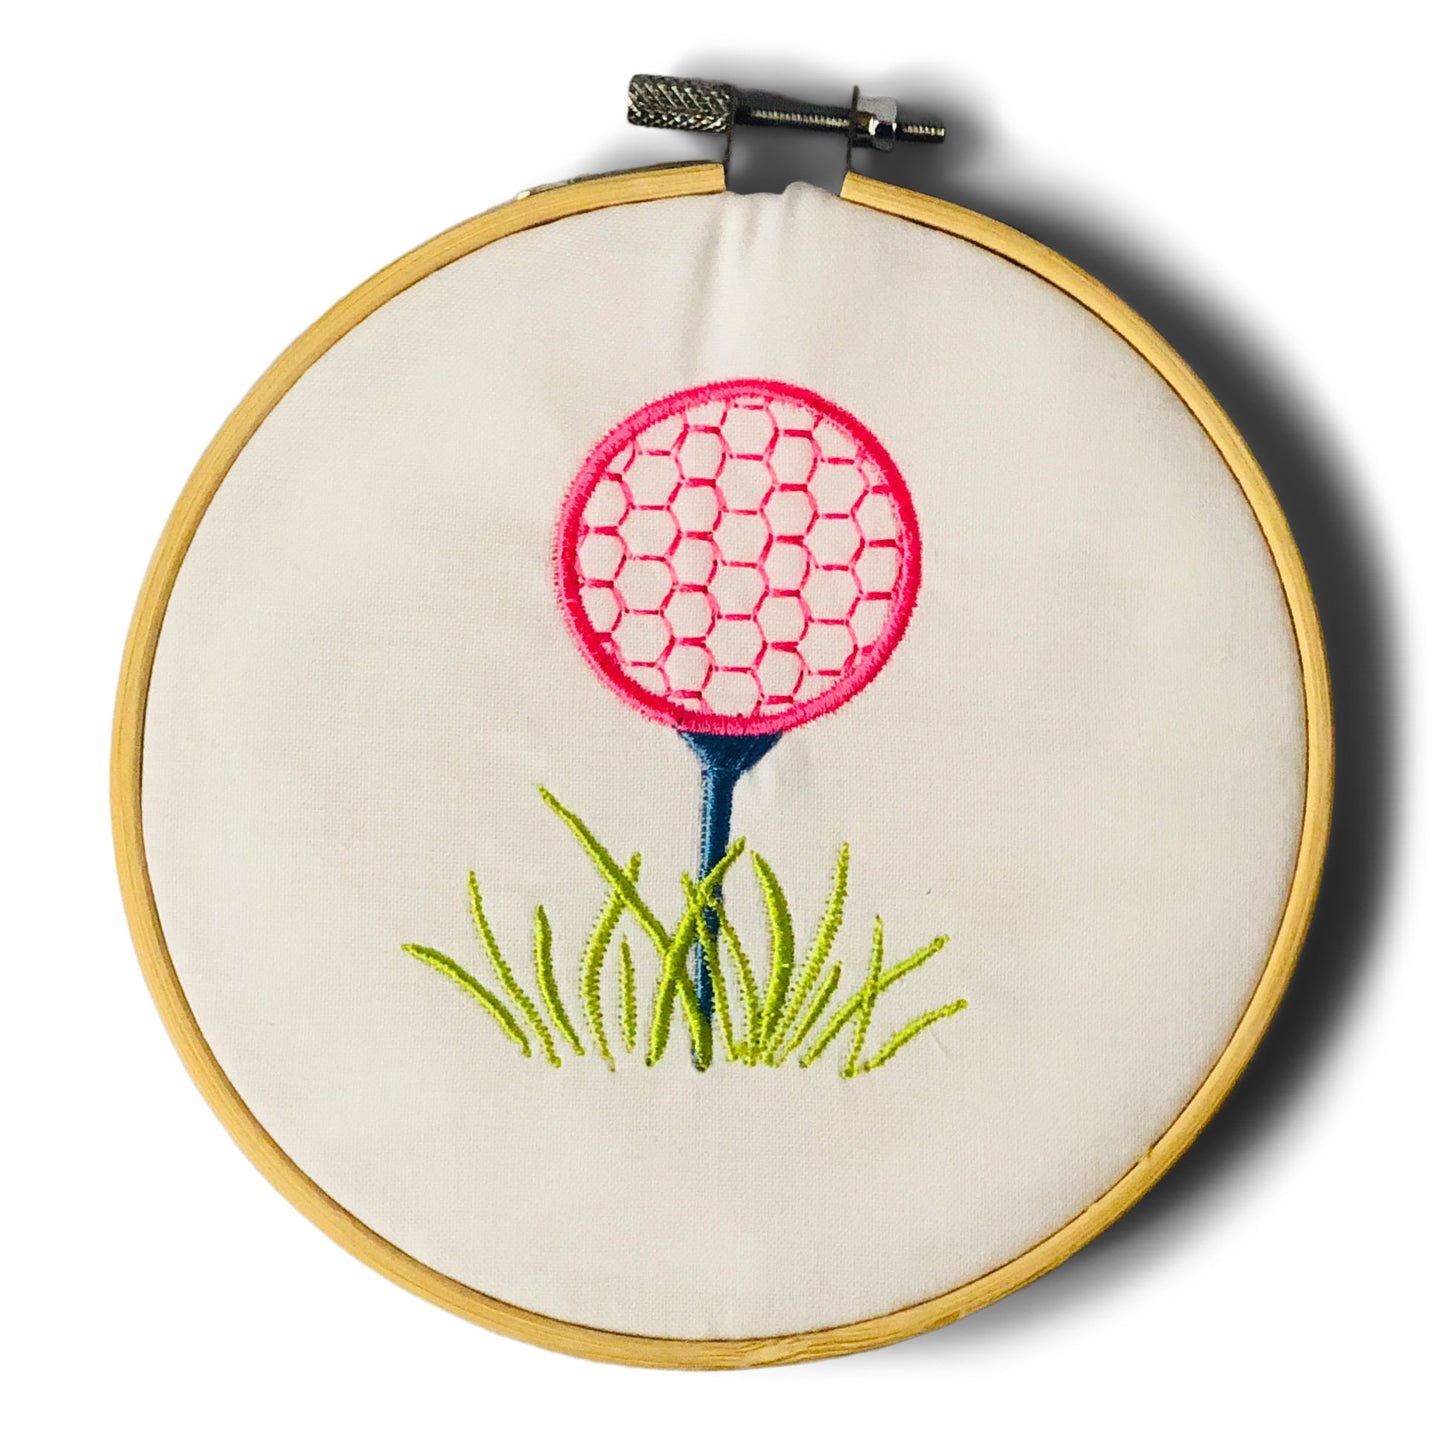 Ornament - Golf Ball on Tee